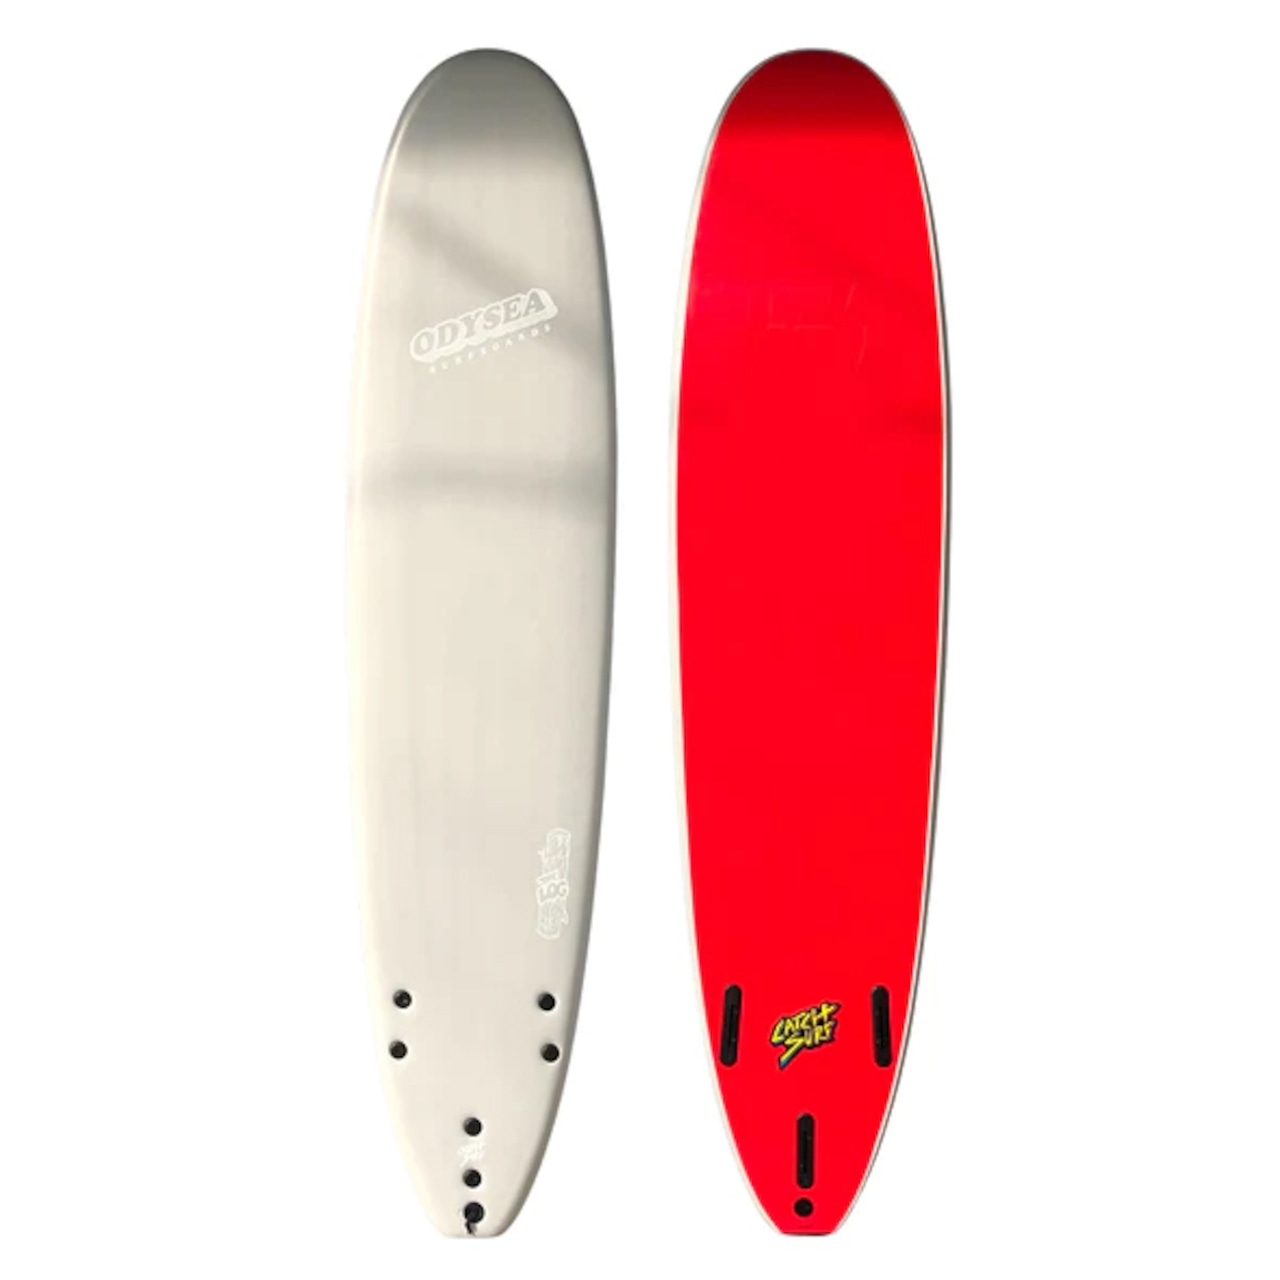 CATCH SURF キャッチサーフ / オディシーログ 8'0" 日本限定モデル Bone/ Red